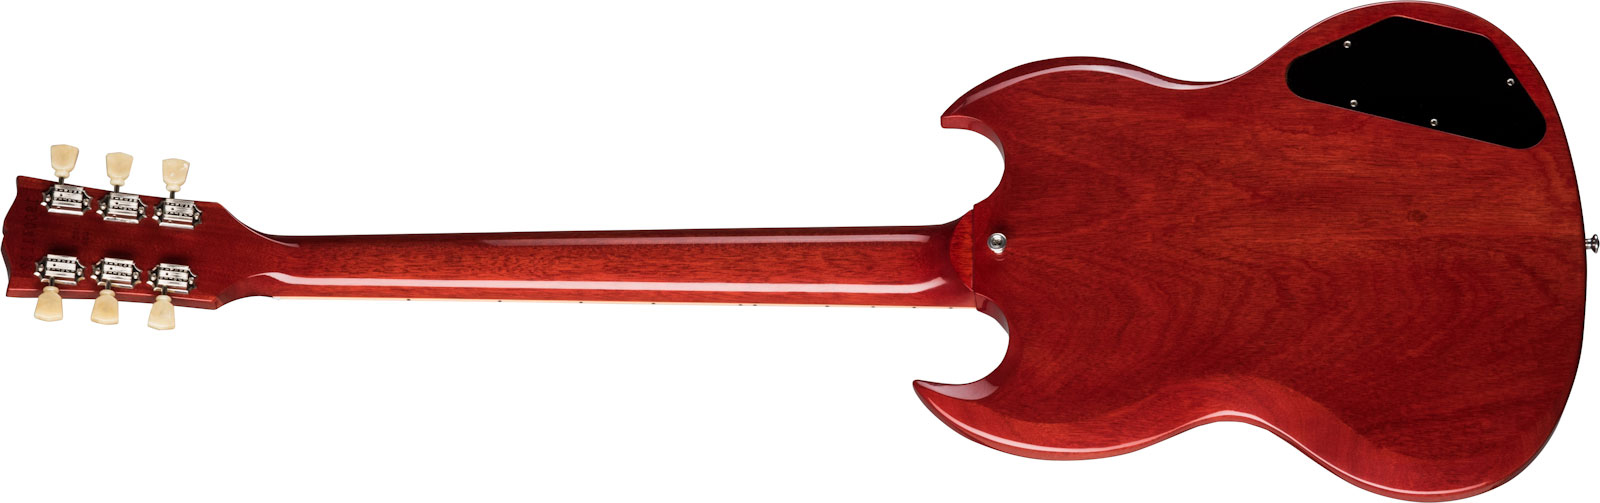 Gibson Sg Standard '61 Lh Gaucher 2h Ht Rw - Vintage Cherry - Guitarra electrica para zurdos - Variation 1